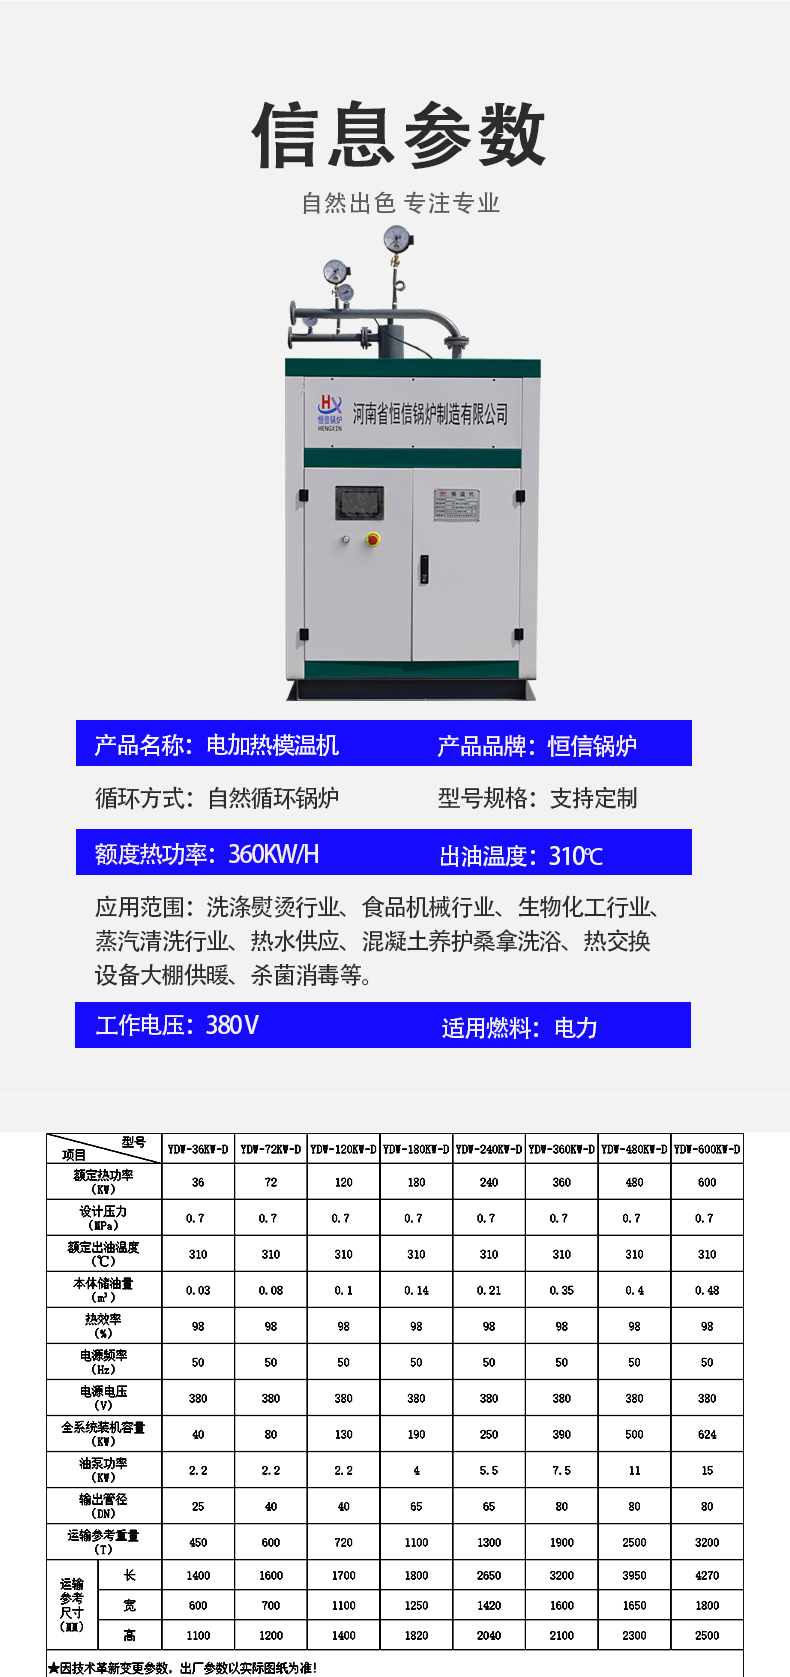 3产品系数-电加热模温机.jpg